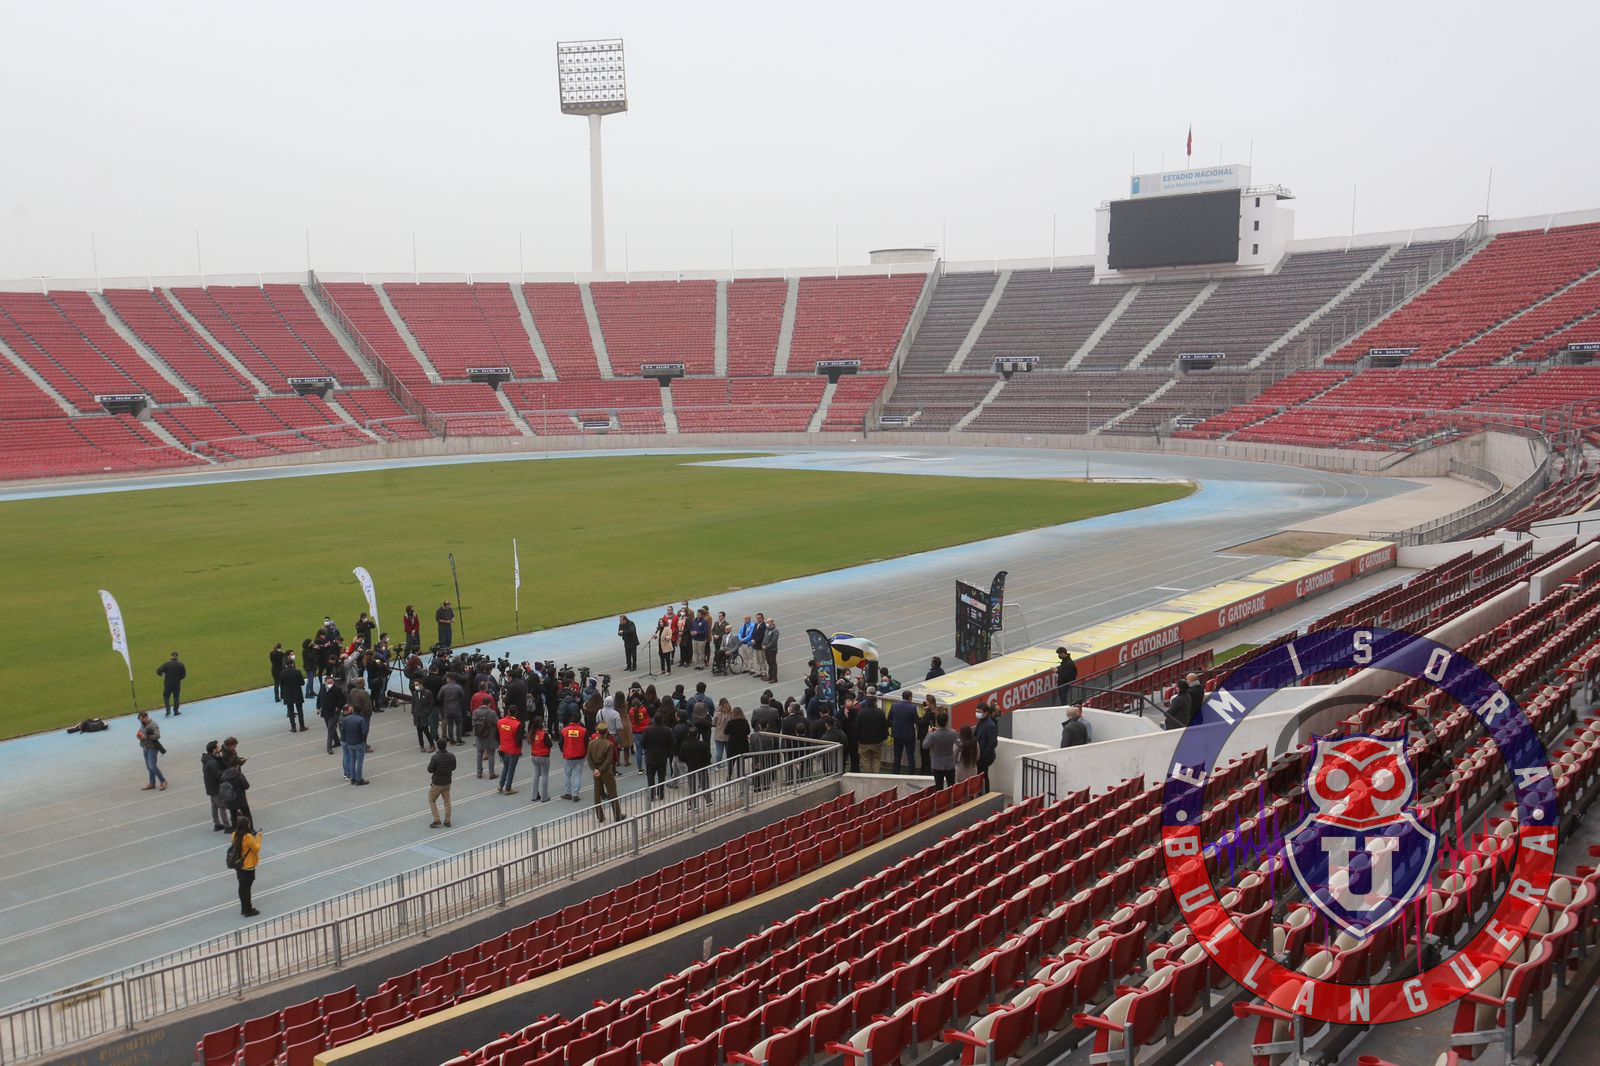 ¿Otra vez problemas con la localía?: Anuncian renovación de pista atlética en el Estadio Nacional para inicios de 2023